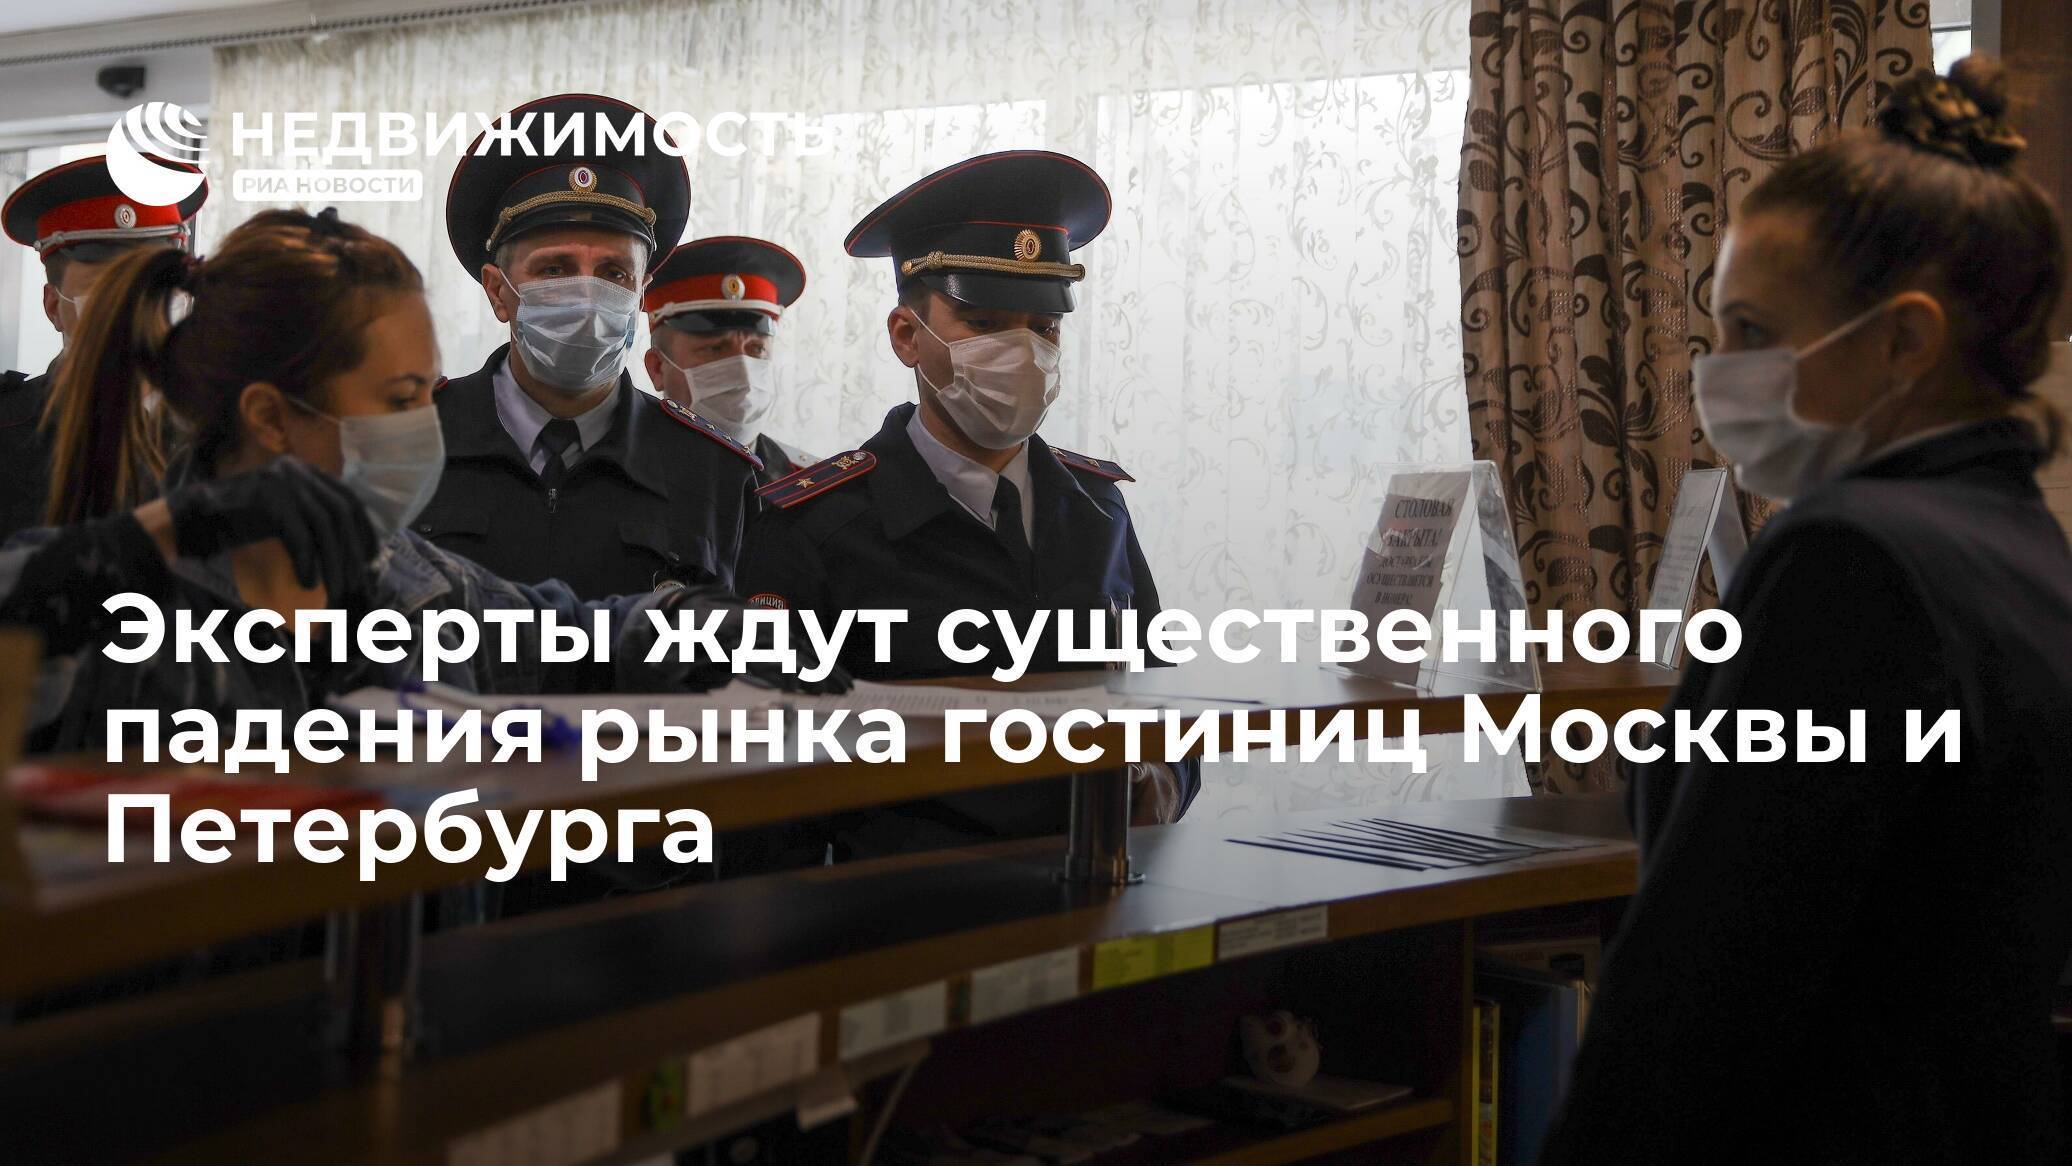 Жители москвы и петербурга готовятся сидеть дома во время эпидемии коронавируса ► последние новости